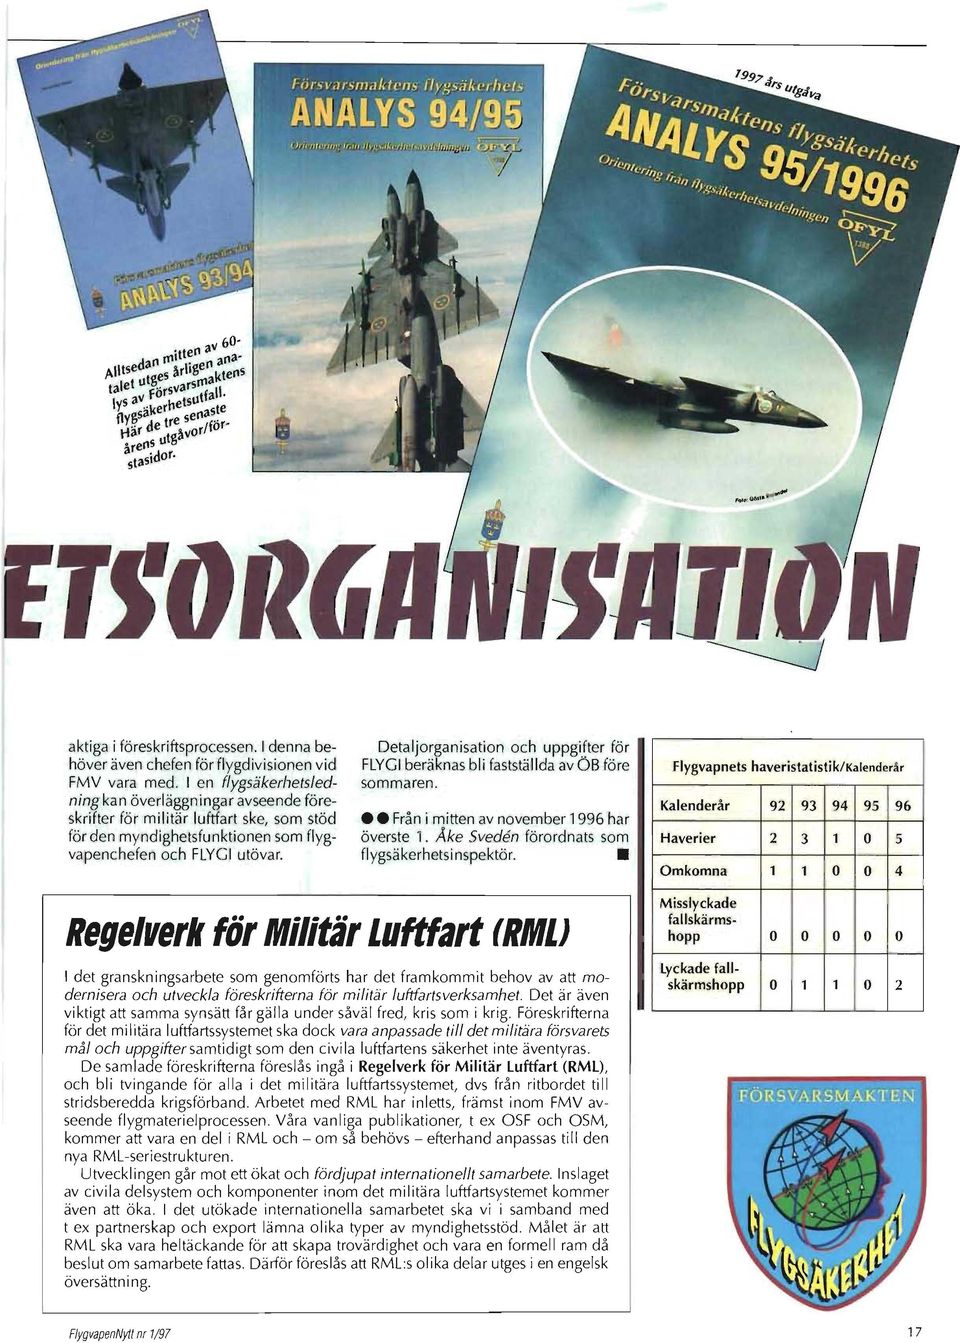 Detaljorganisation och uppgifter för FLYGI beräknas bli fastställda av ÖB före sommaren. Från i mitten av november 1996 har överste 'I. Åke Sveden förordnats som flygsäkerhetsi nspektör.